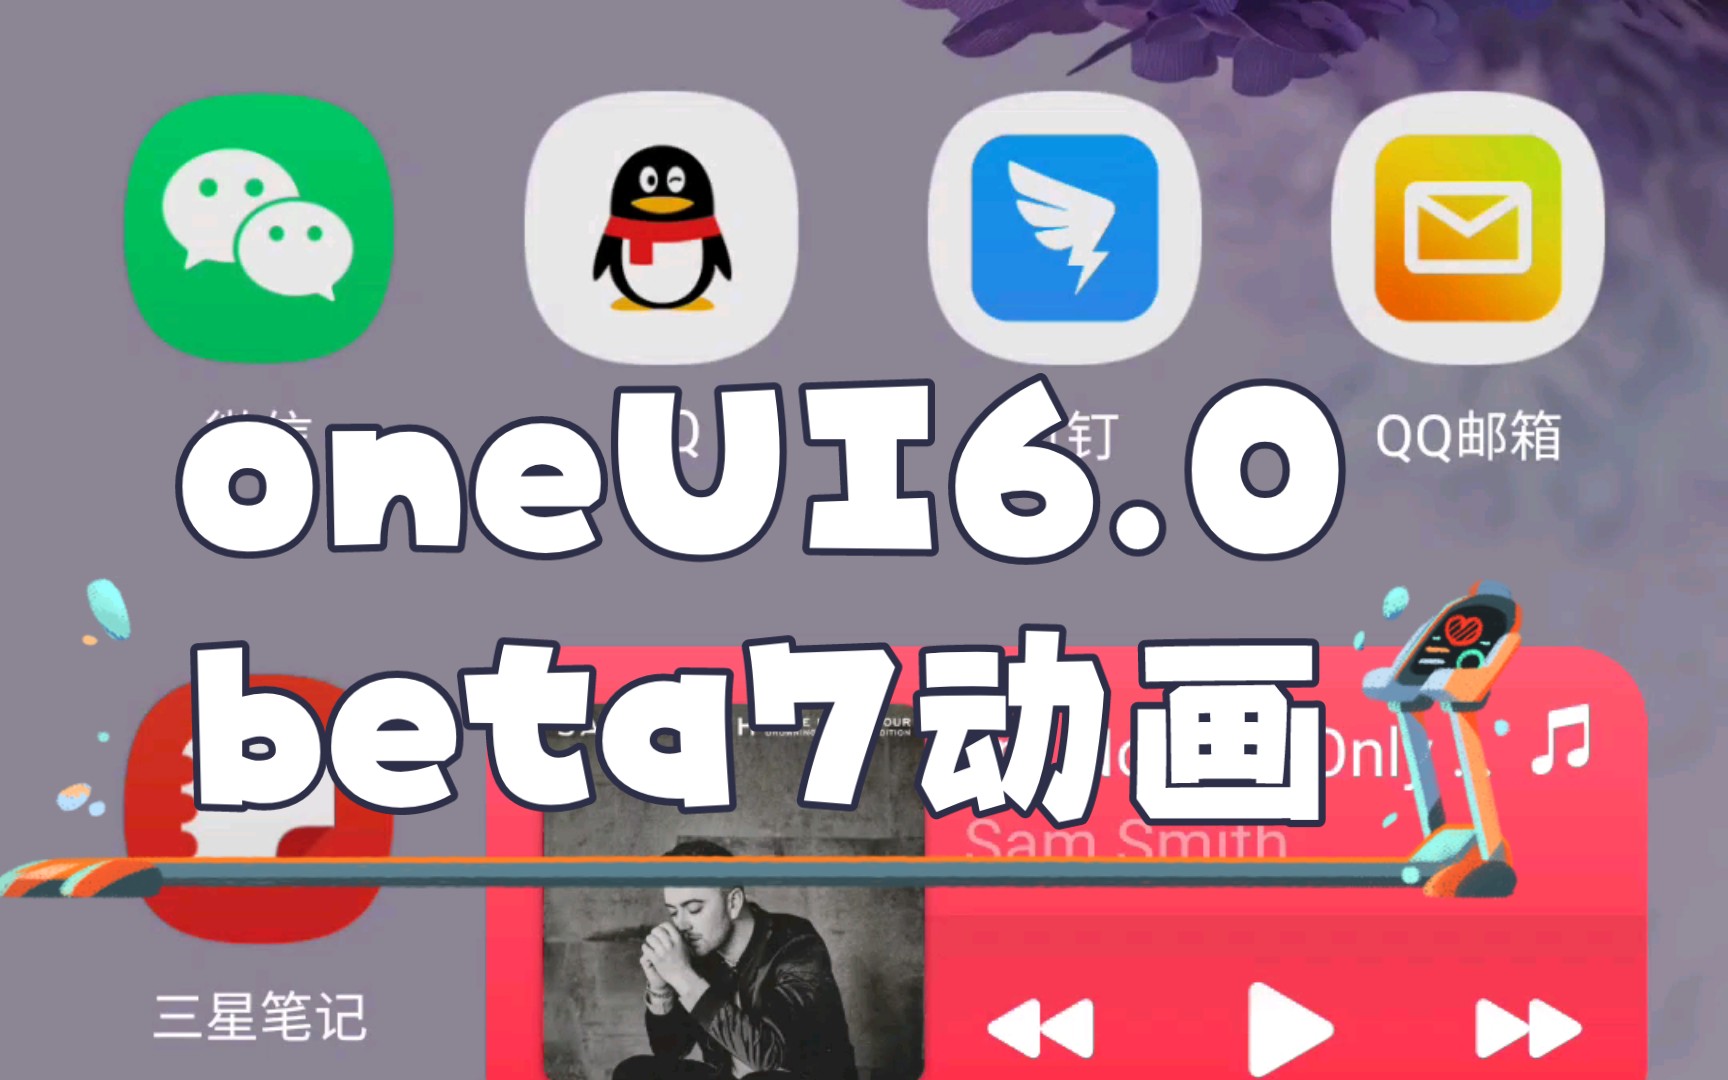 三星oneui3.0彩色键盘图片